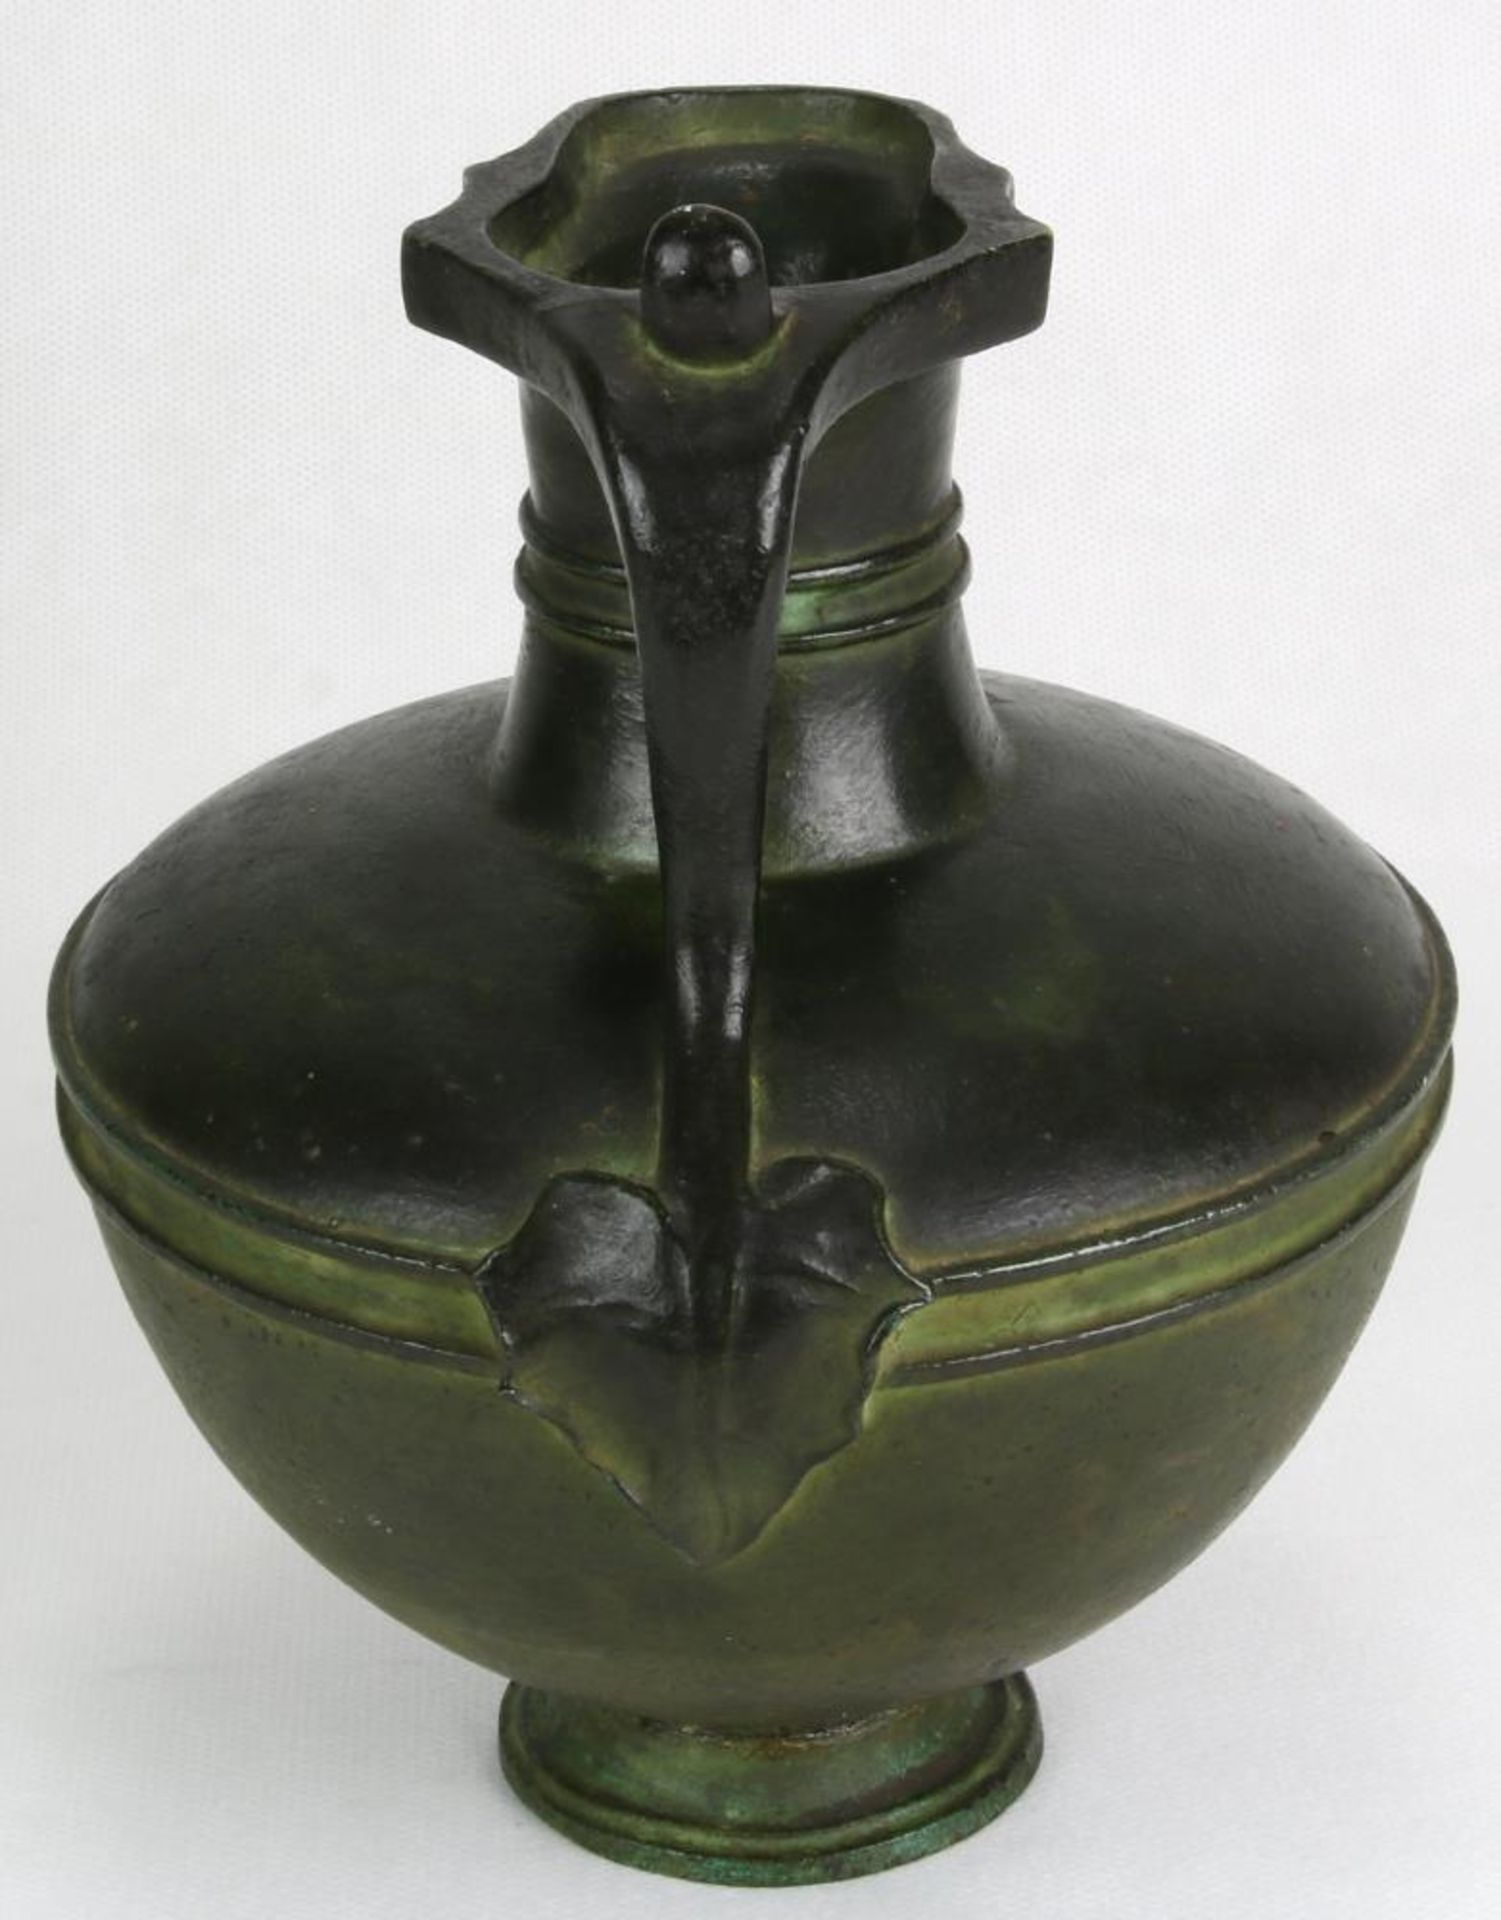 Kleiner Krug. Wohl aus der Antike. Bronze, grün patiniert. Durchmesser ca. 14 cm, Höhe ca. 17 cm, - Bild 2 aus 4